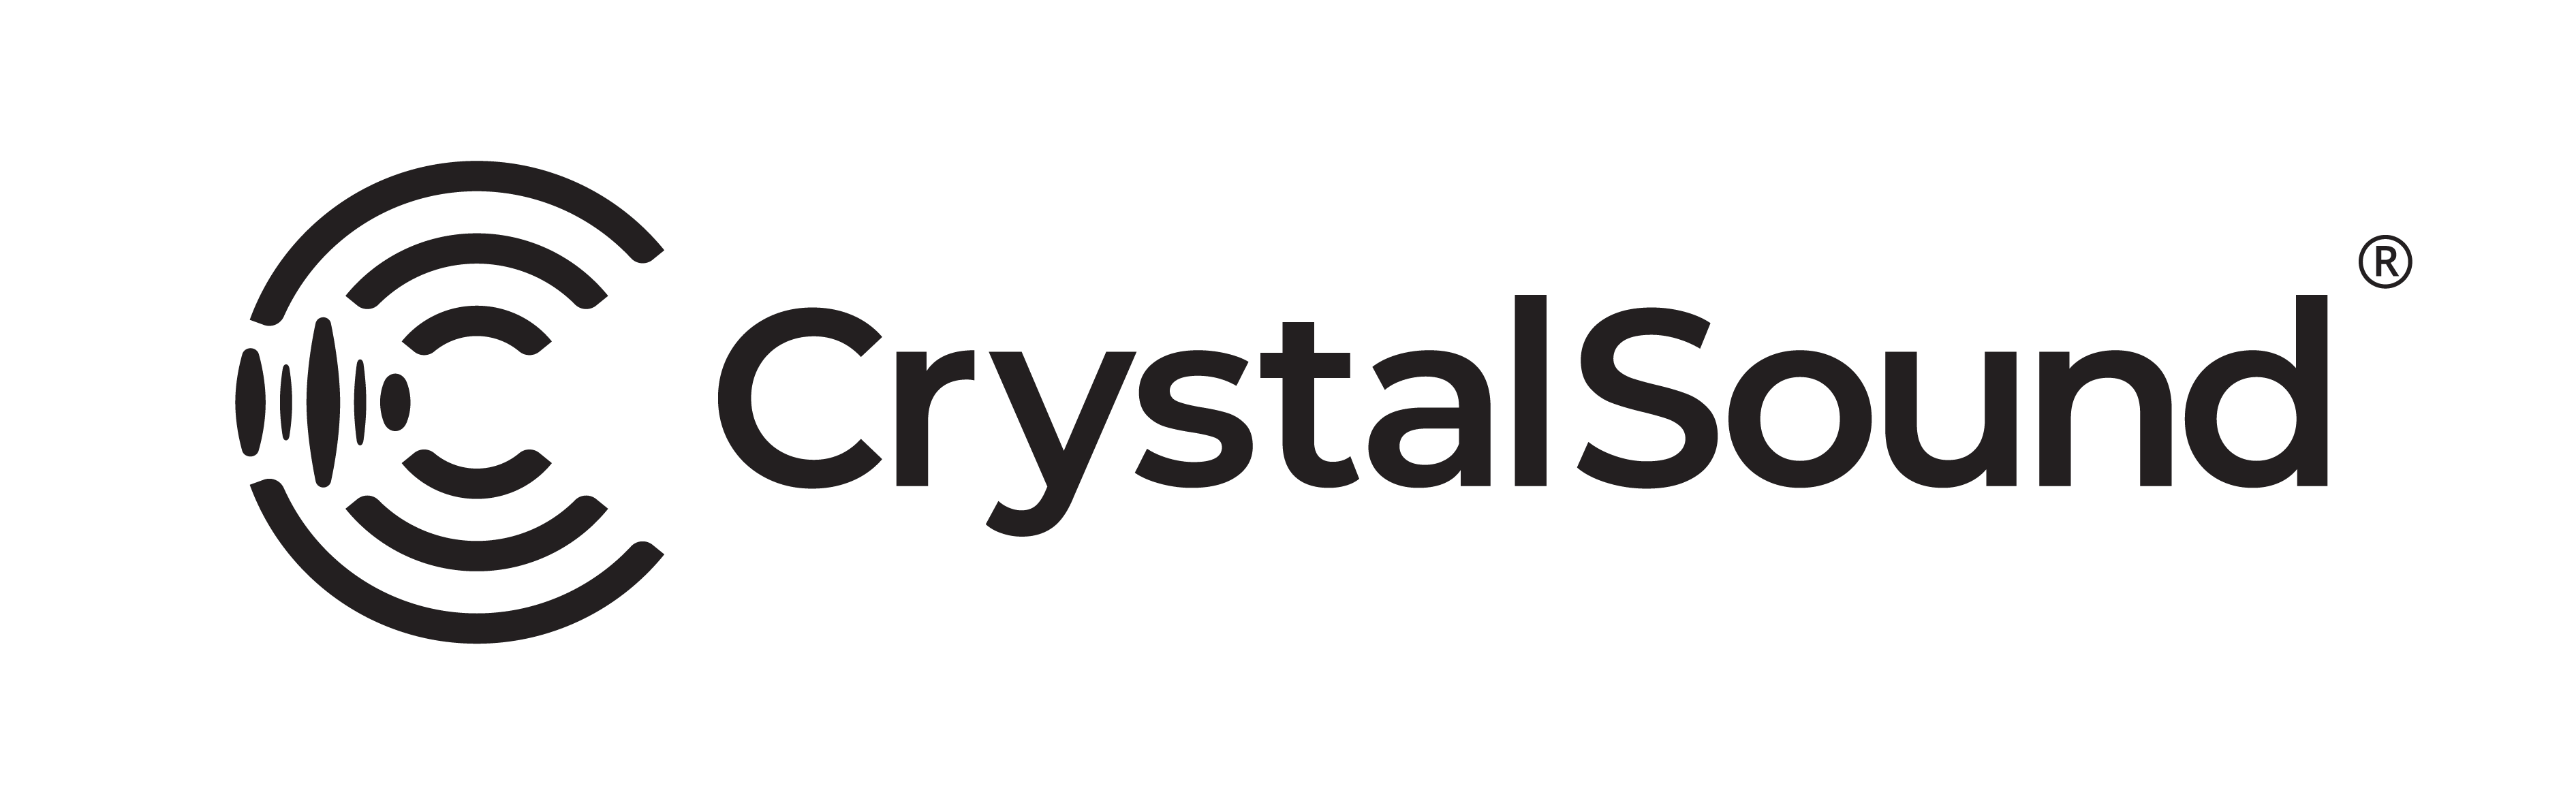 CrystalSound-logo-header